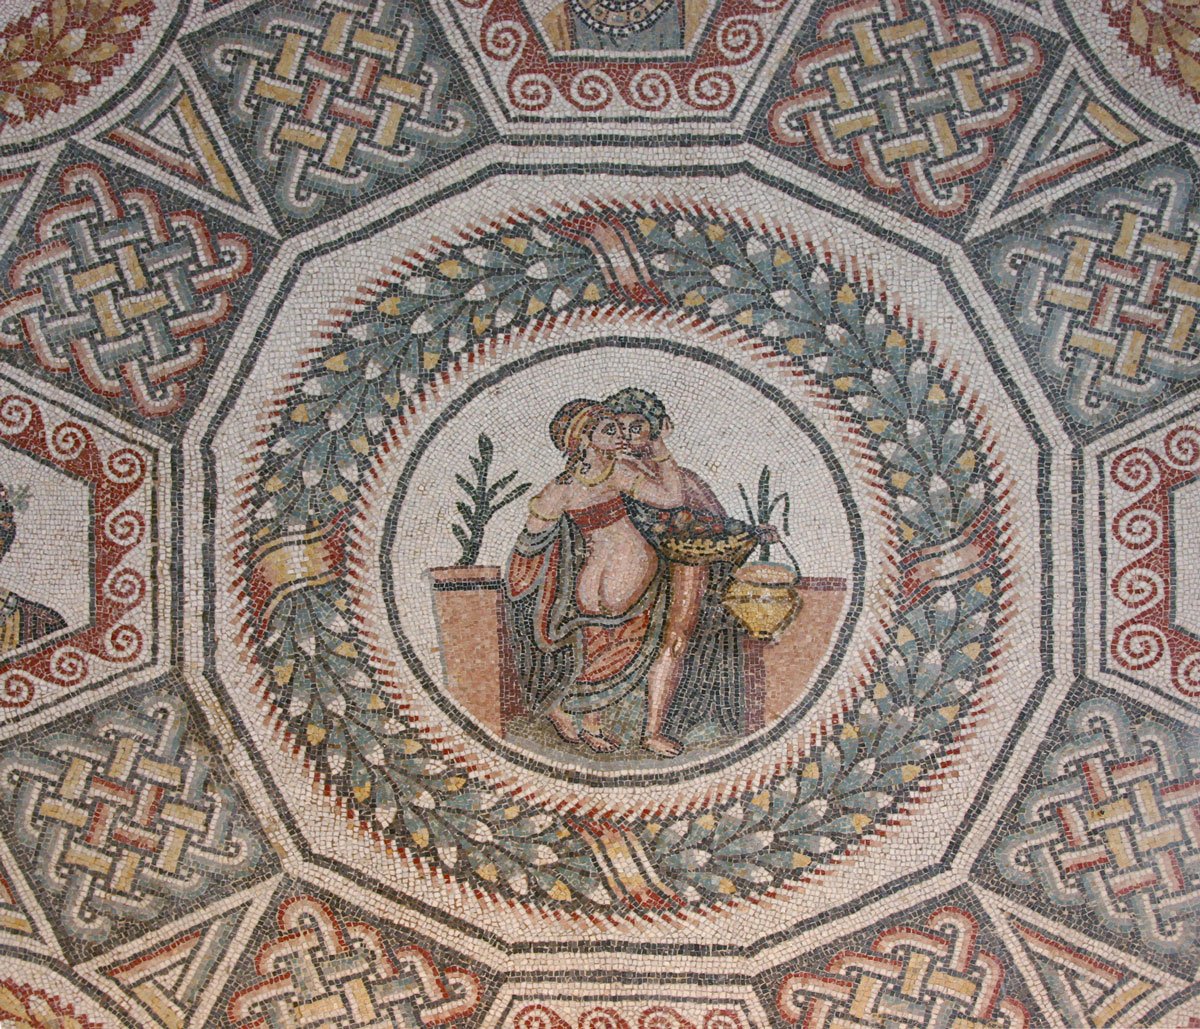 An erotic scene from the fourth century, at Villa Romana del Casale (Piazza Armerina)